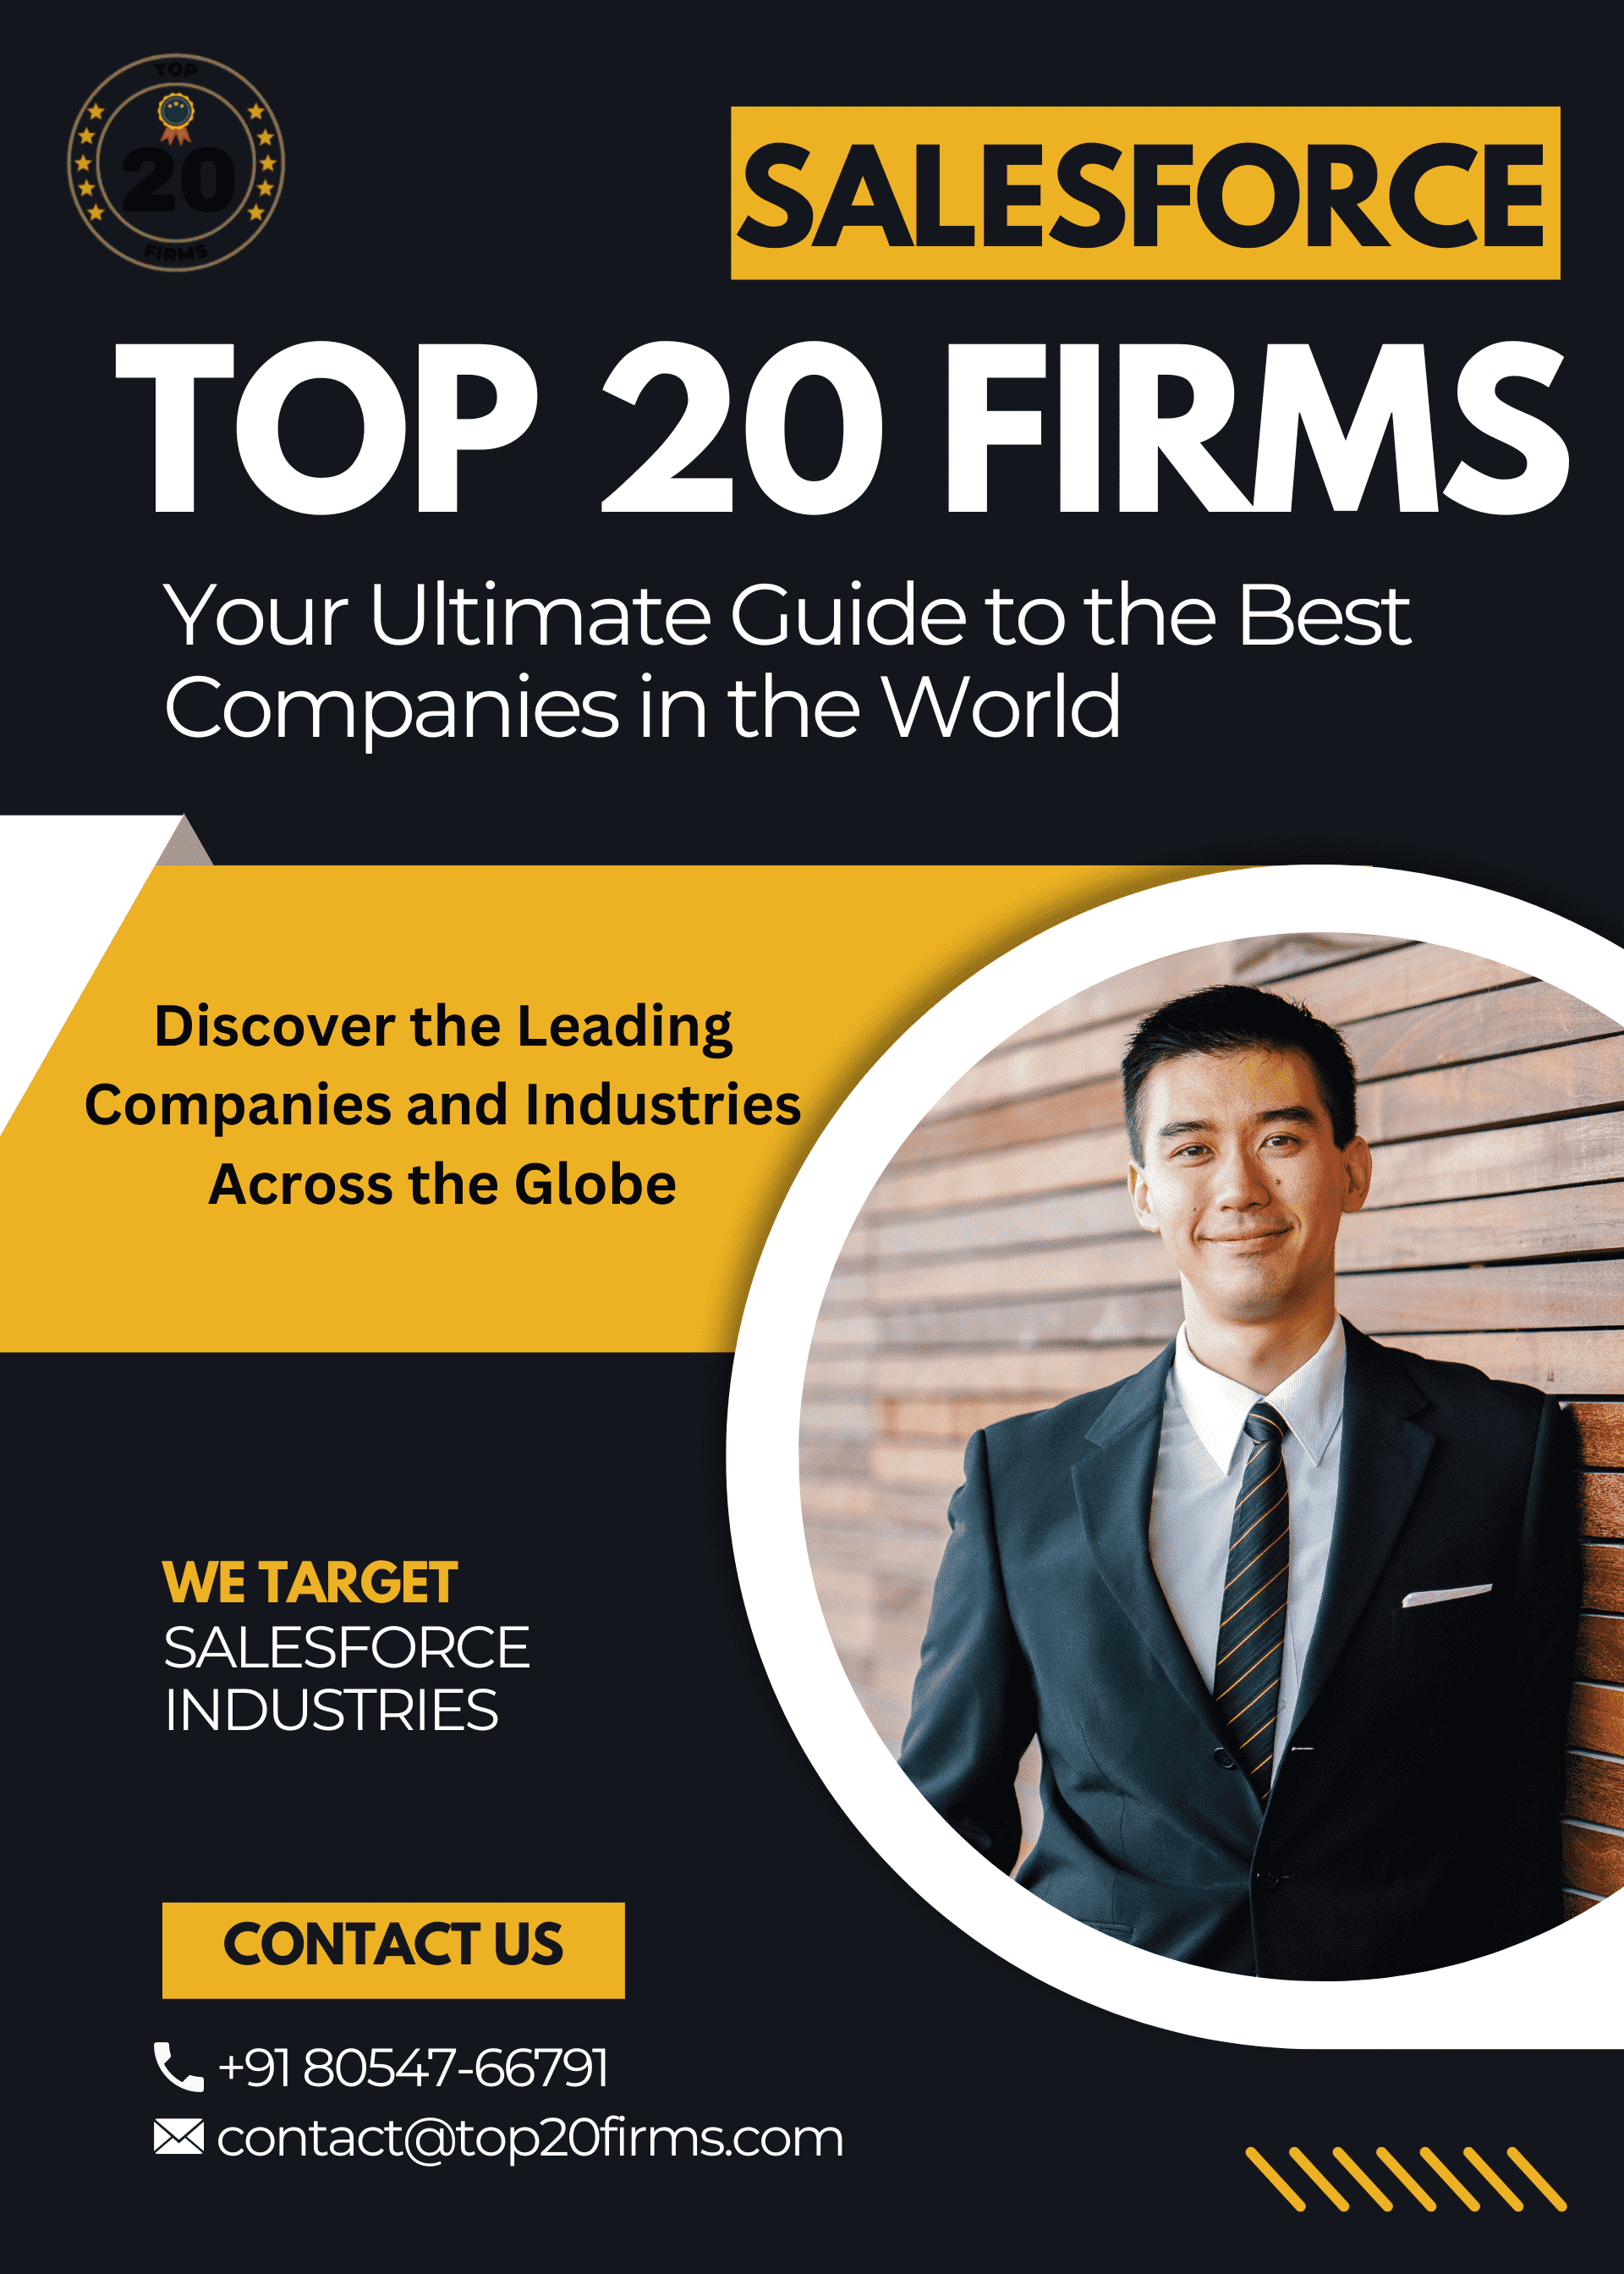 Top 20 Firms